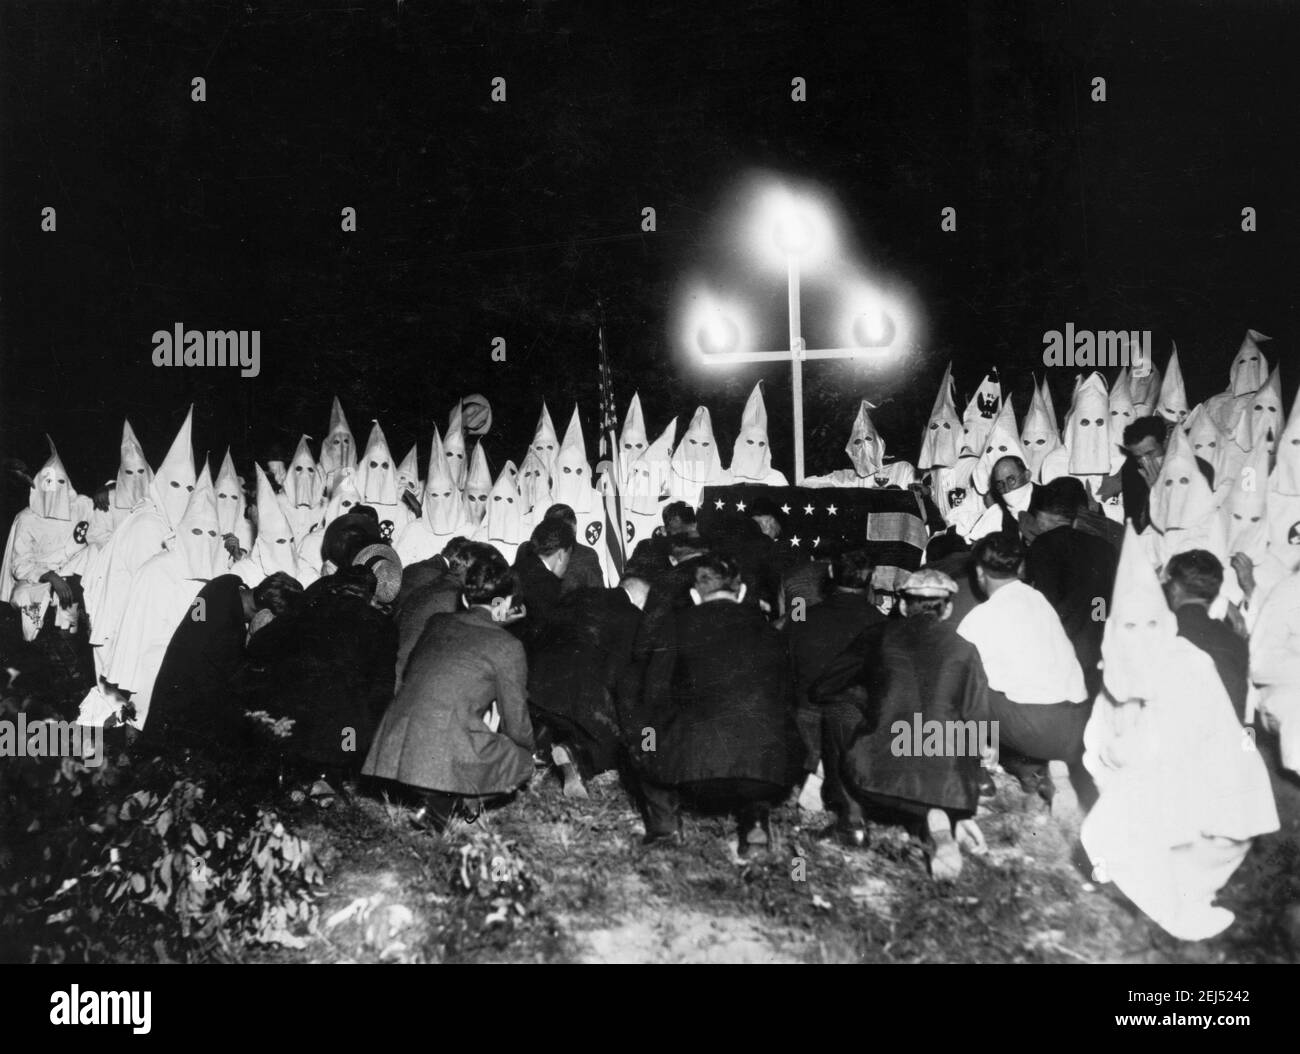 Ku Klux Klan. Envuelta a los miembros del Klan en el fondo con nuevos candidatos que se arrodillaban ante ellos, Washington DC, c. 1920-1930 Foto de stock